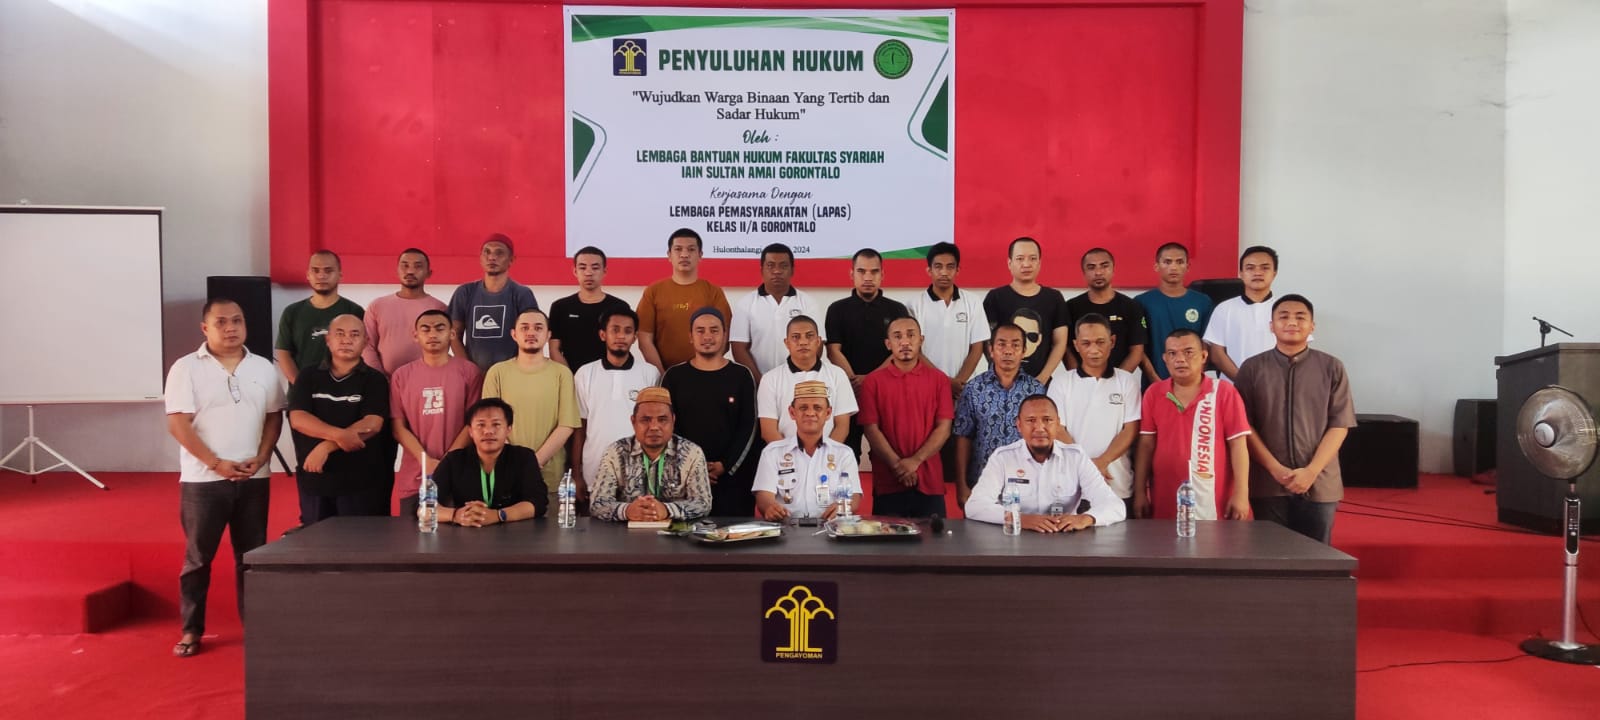 Kerjasama Dengan LBH Fakultas Syariah IAIN, Lapas Gorontalo Gelar Penyuluhan Hukum